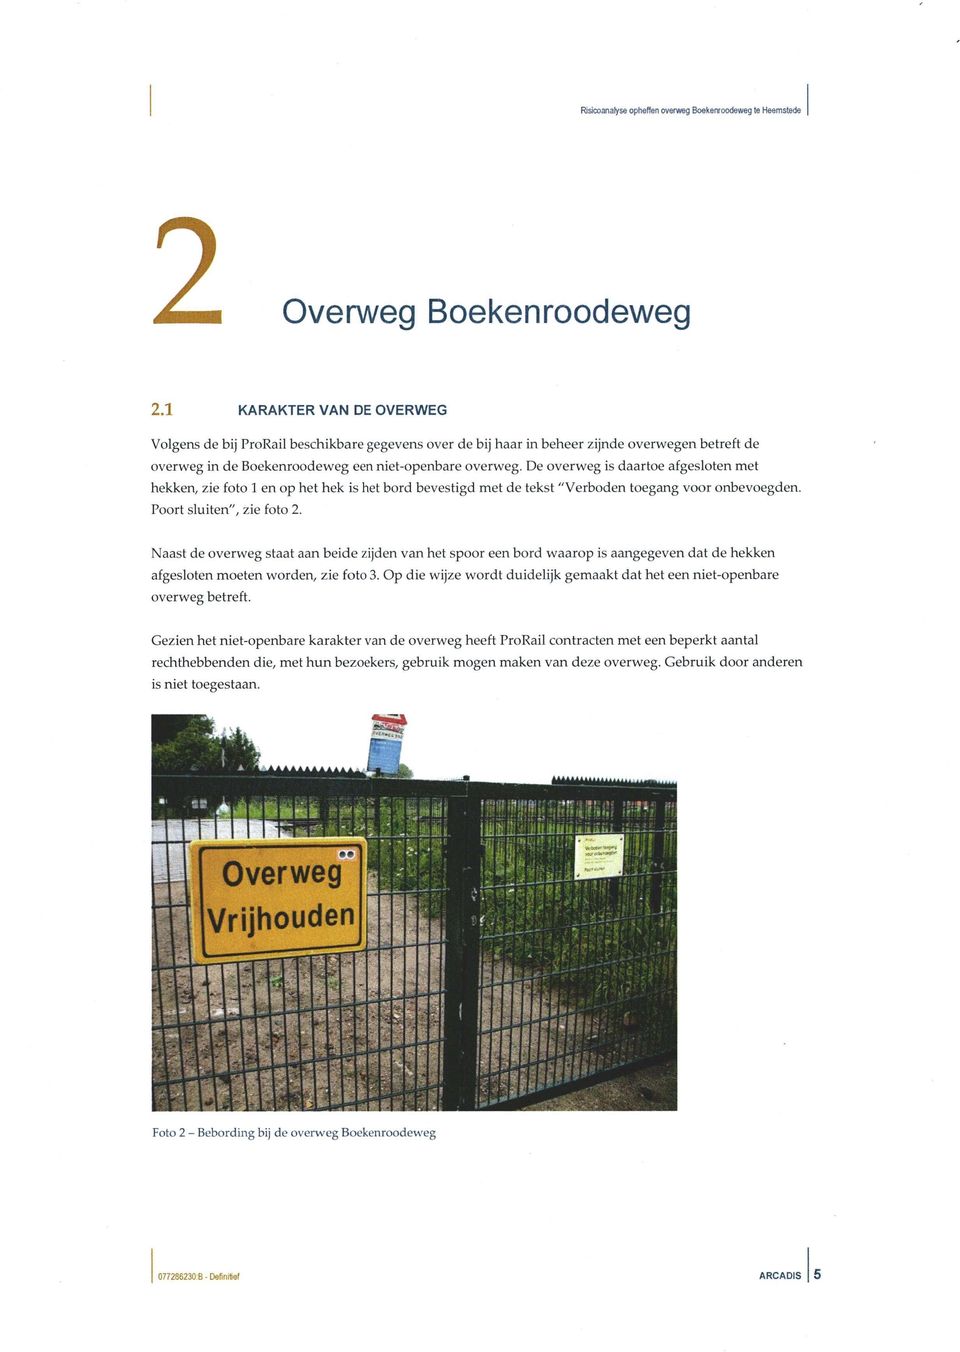 De overweg is daartoe afgesloten met hekken, zie foto 1 en op het hek is het bord bevestigd met de tekst "Verboden toegang voor onbevoegden. Poort sluiten", zie foto 2.